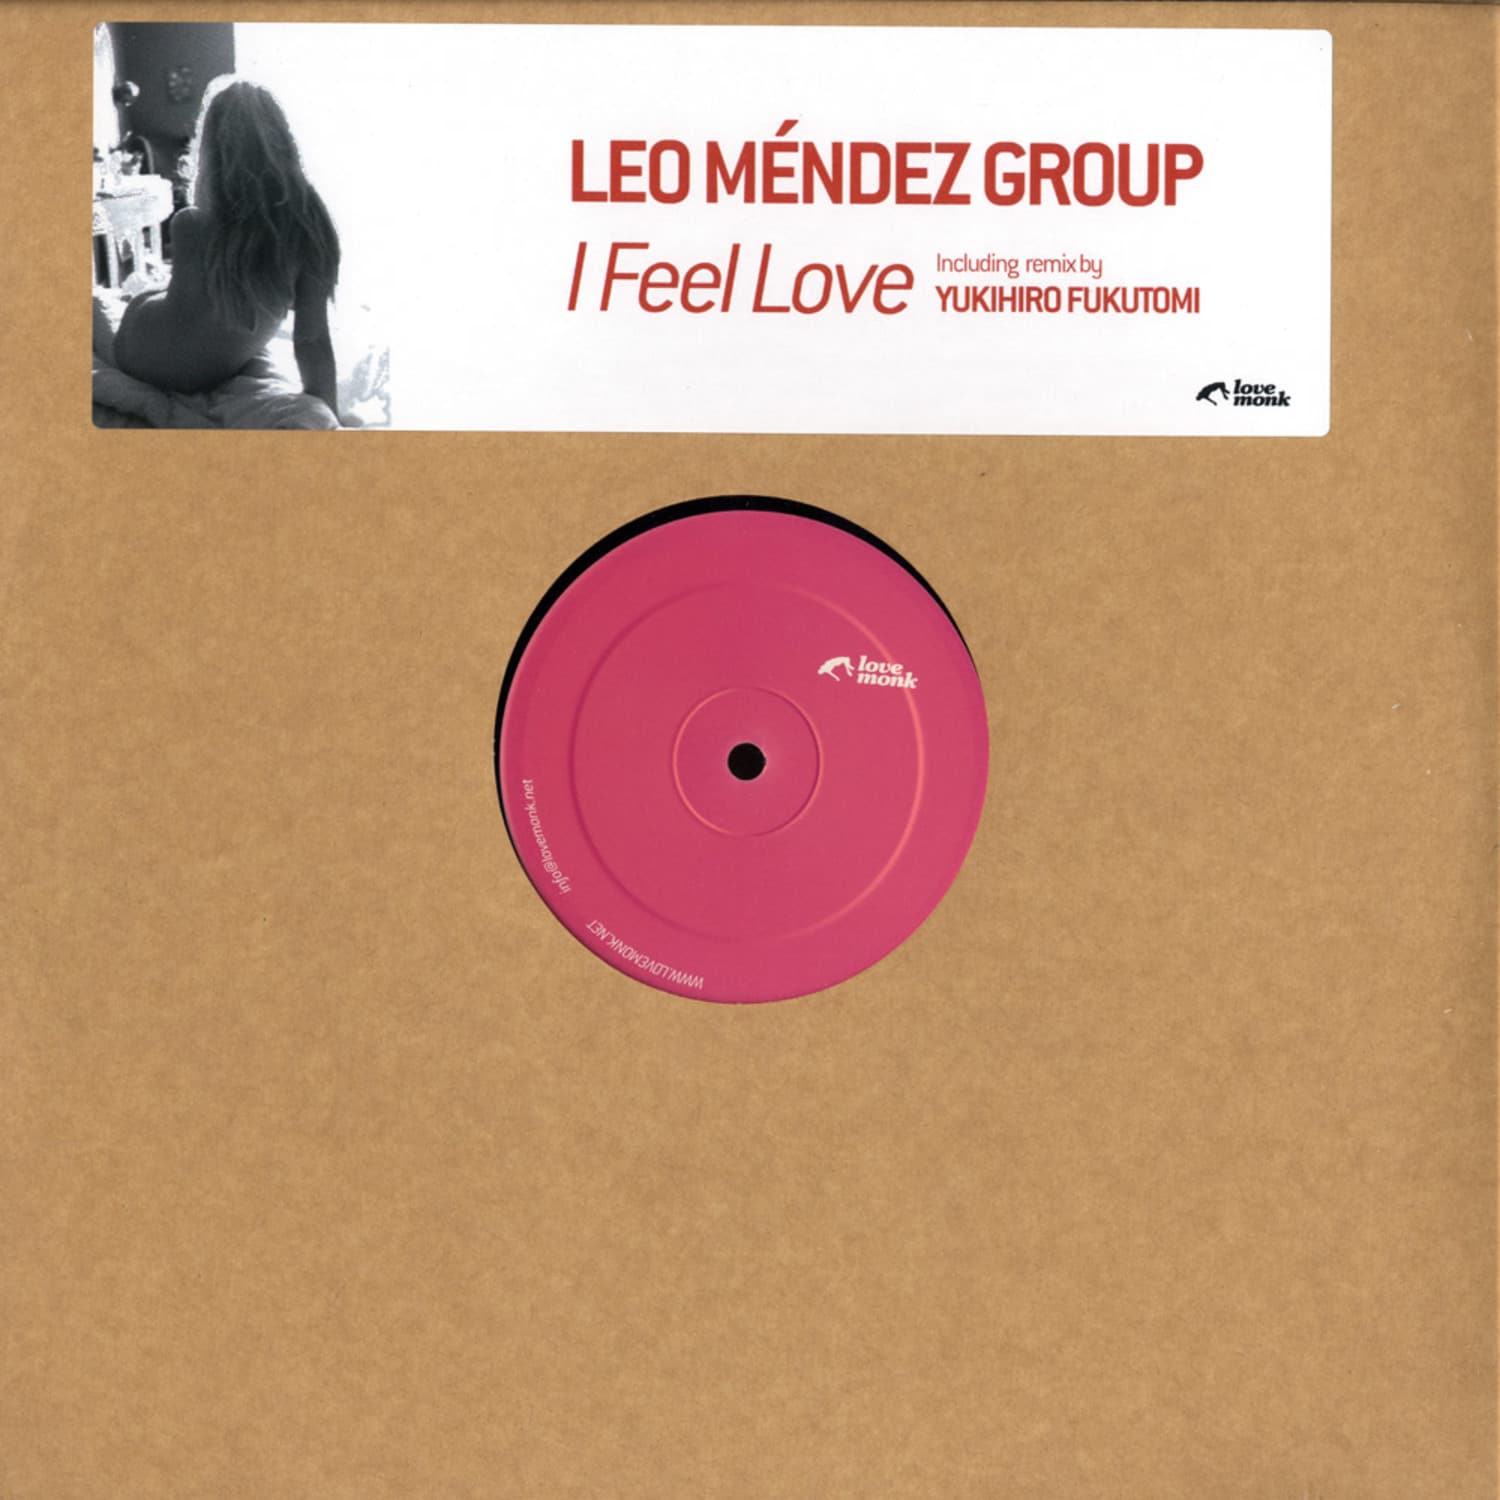 Leo Mendez Group - I FEEL LOVE